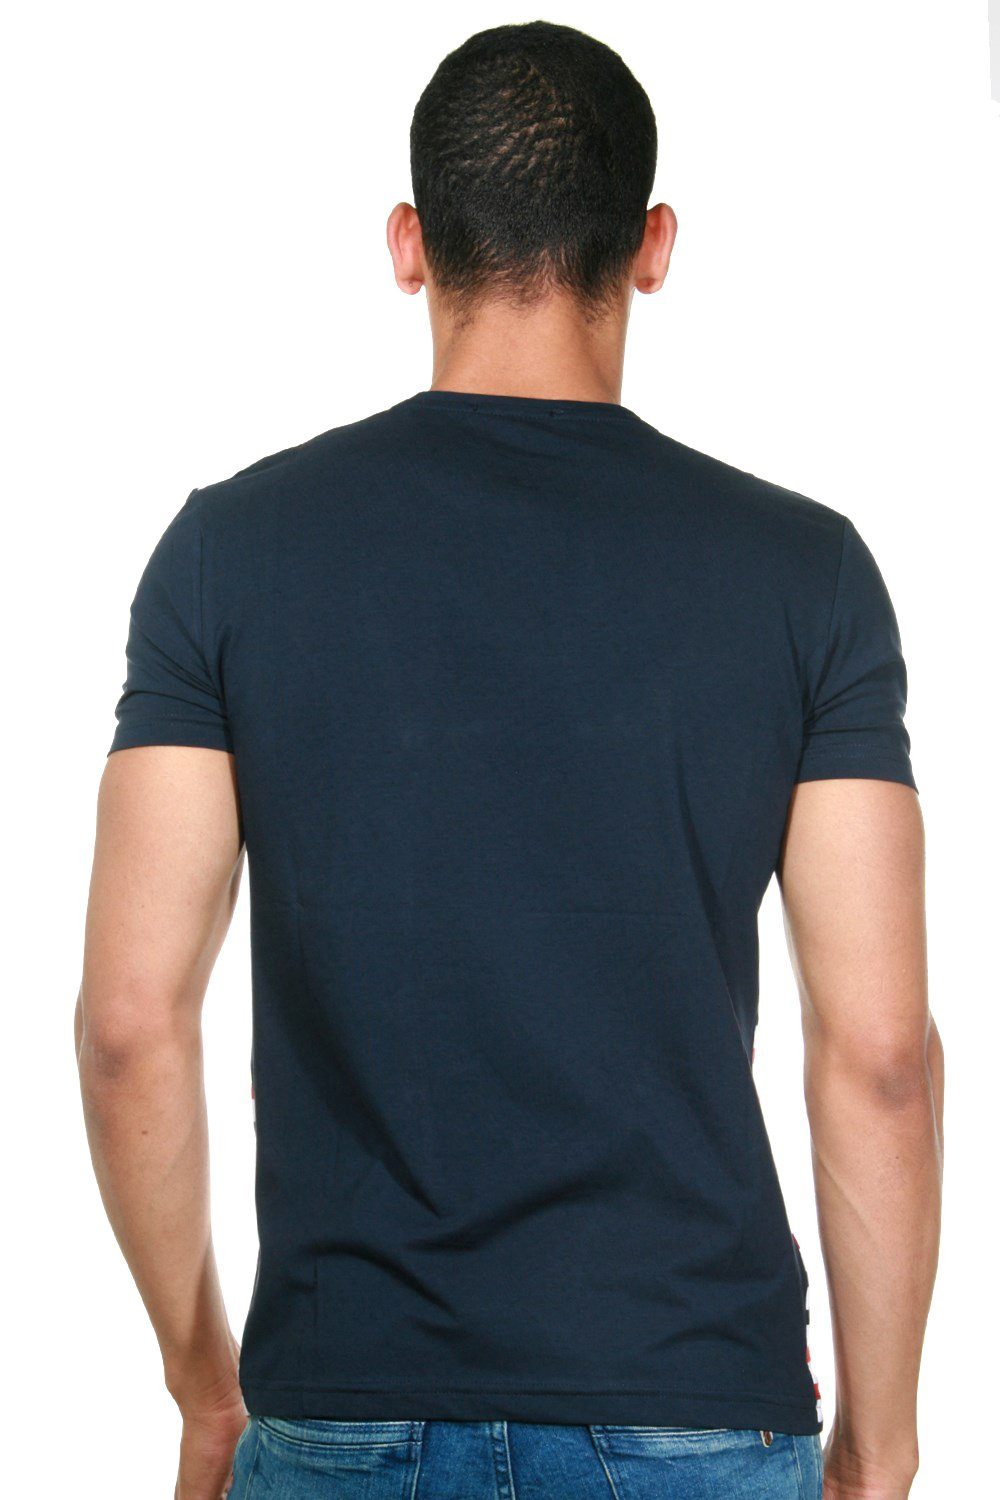 FIOCEO blau/schwarz Rundhalsshirt